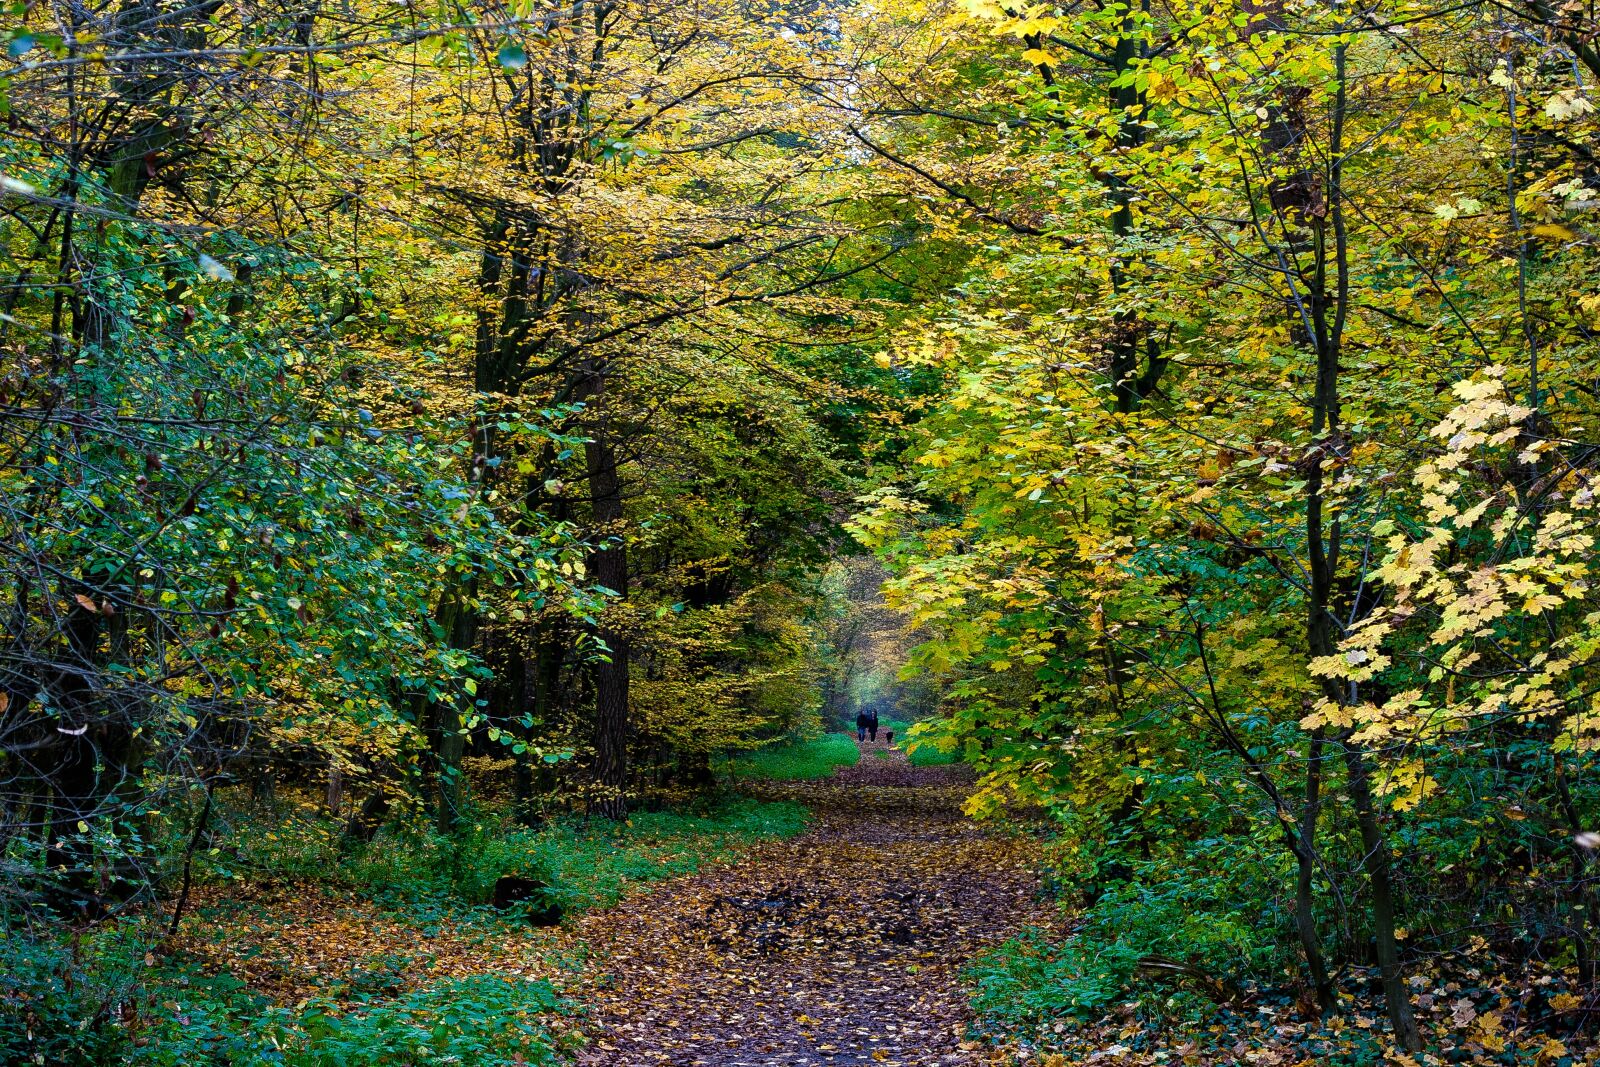 Canon EF 50mm f/1.8 sample photo. Autumn, colorful, fall foliage photography